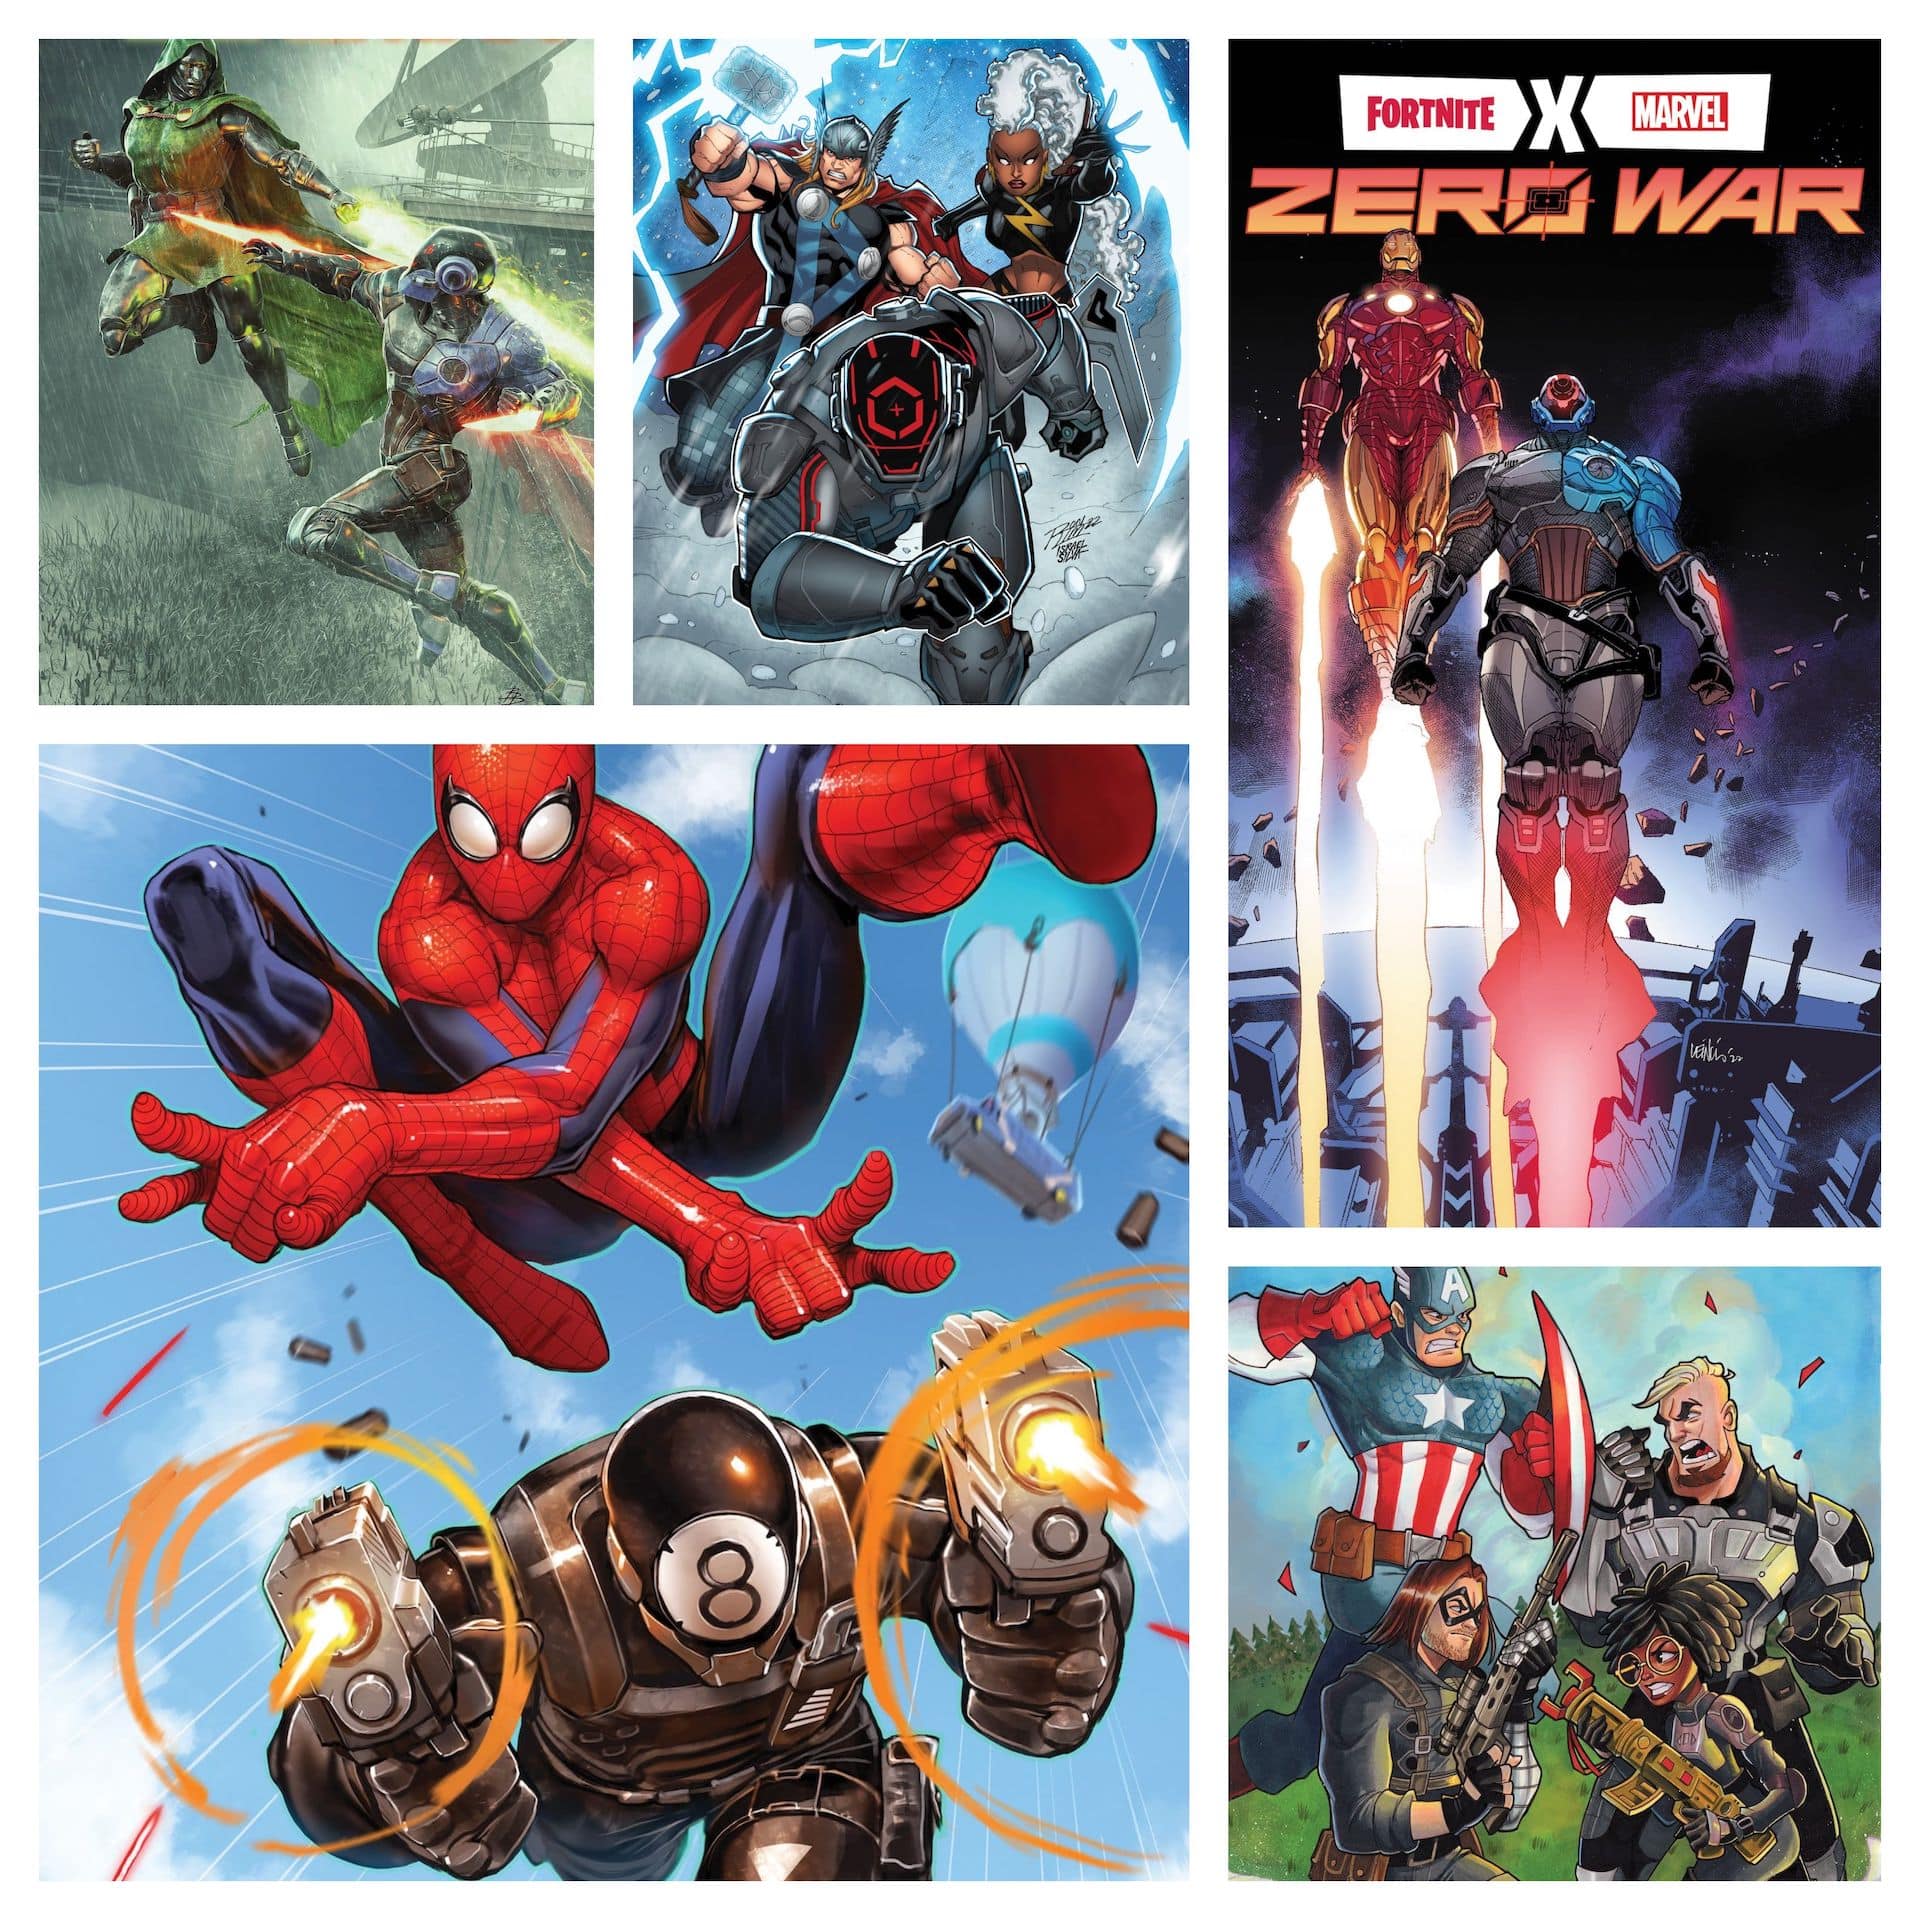 Marvel releases every 'Fortnite X Marvel: Zero War' #2 cover